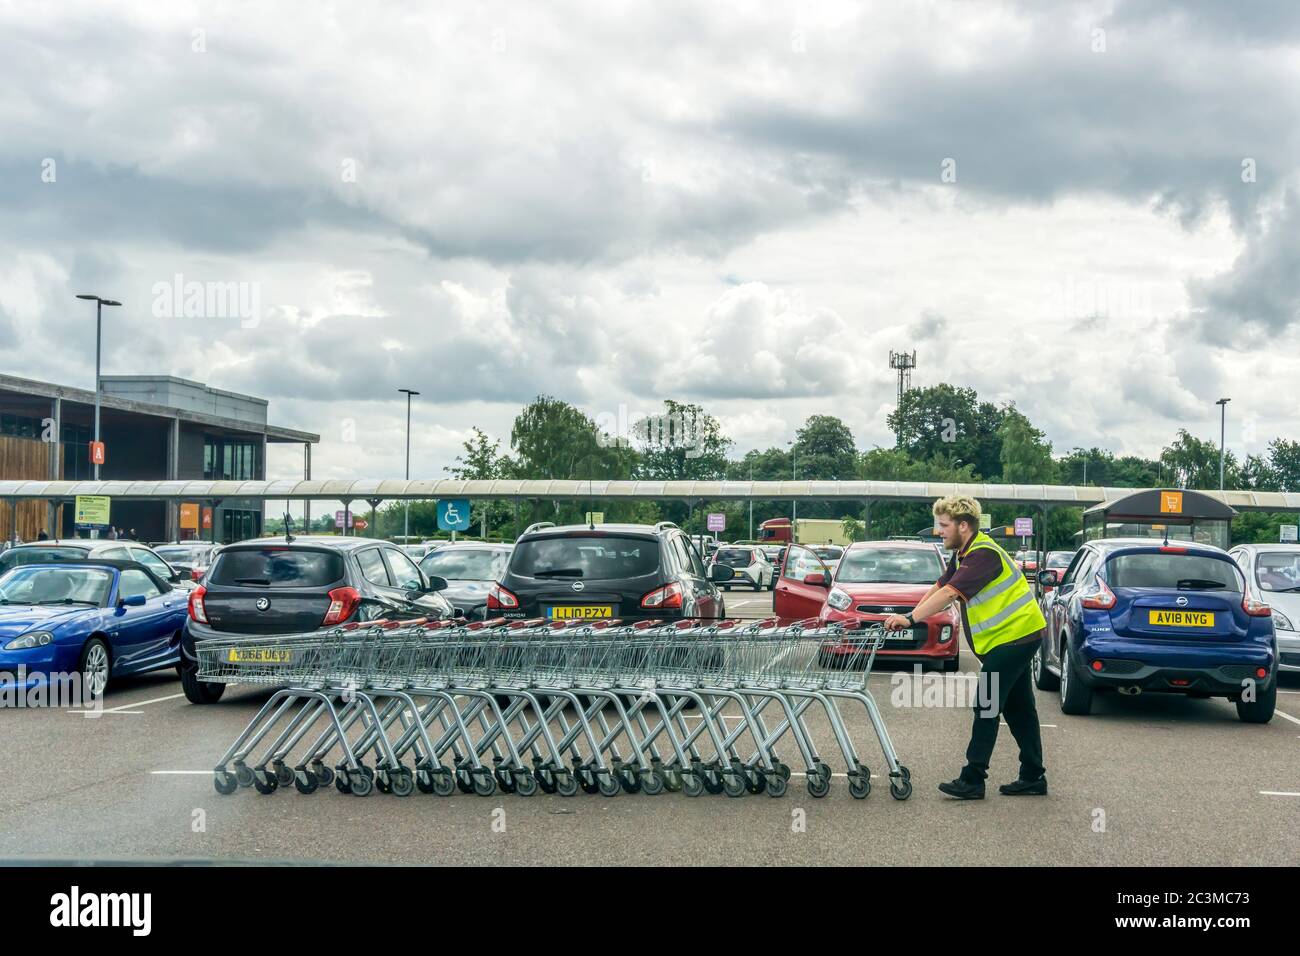 Recogida de carros en un aparcamiento supermercado. Foto de stock